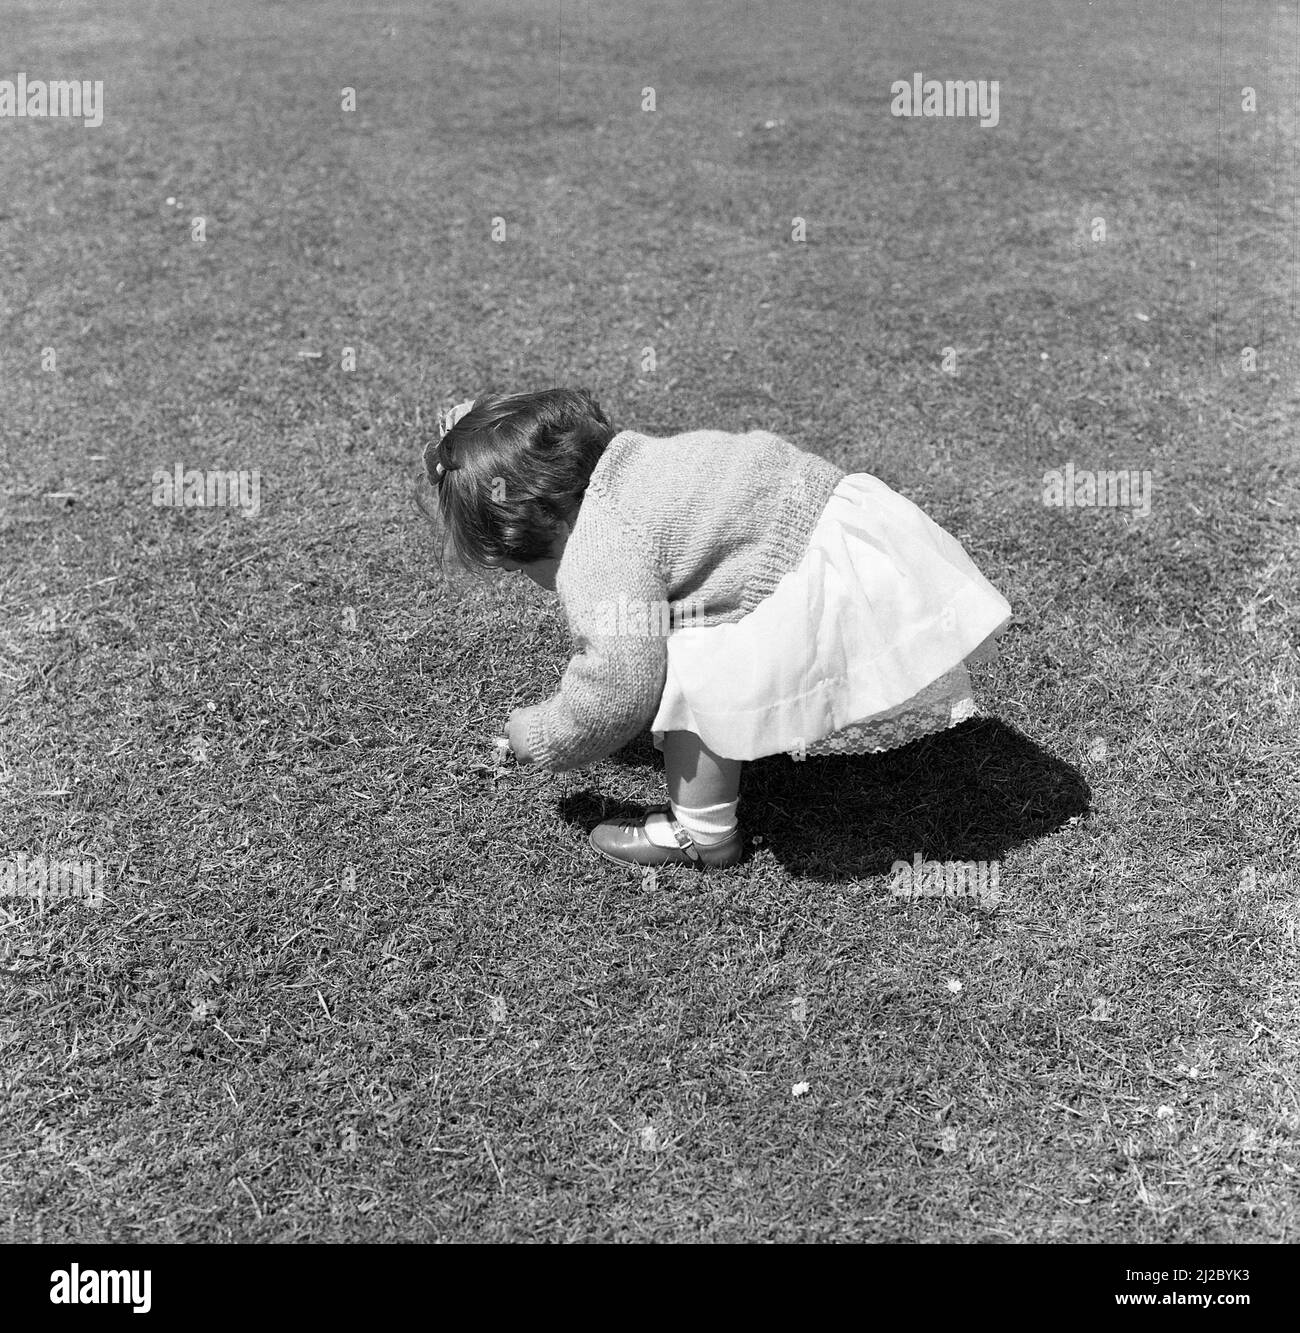 1961, historisch, draußen auf einem Rasen, ein kleines Mädchen, das sich beugte, um eine Gänseblümchen zu holen, England, Großbritannien. Stockfoto